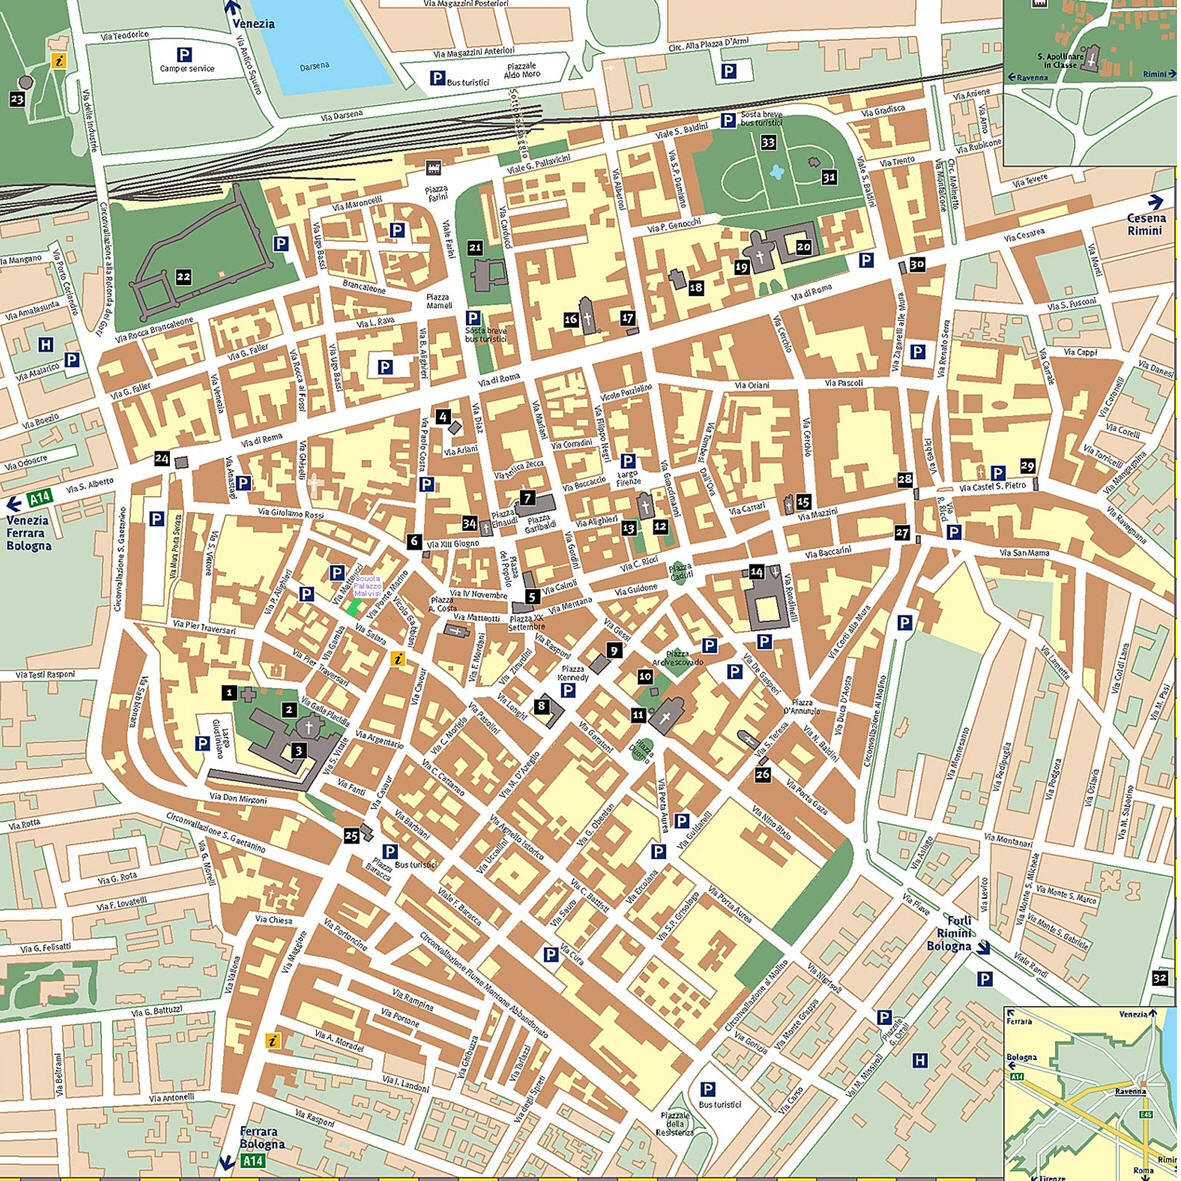 Ravenna center karte